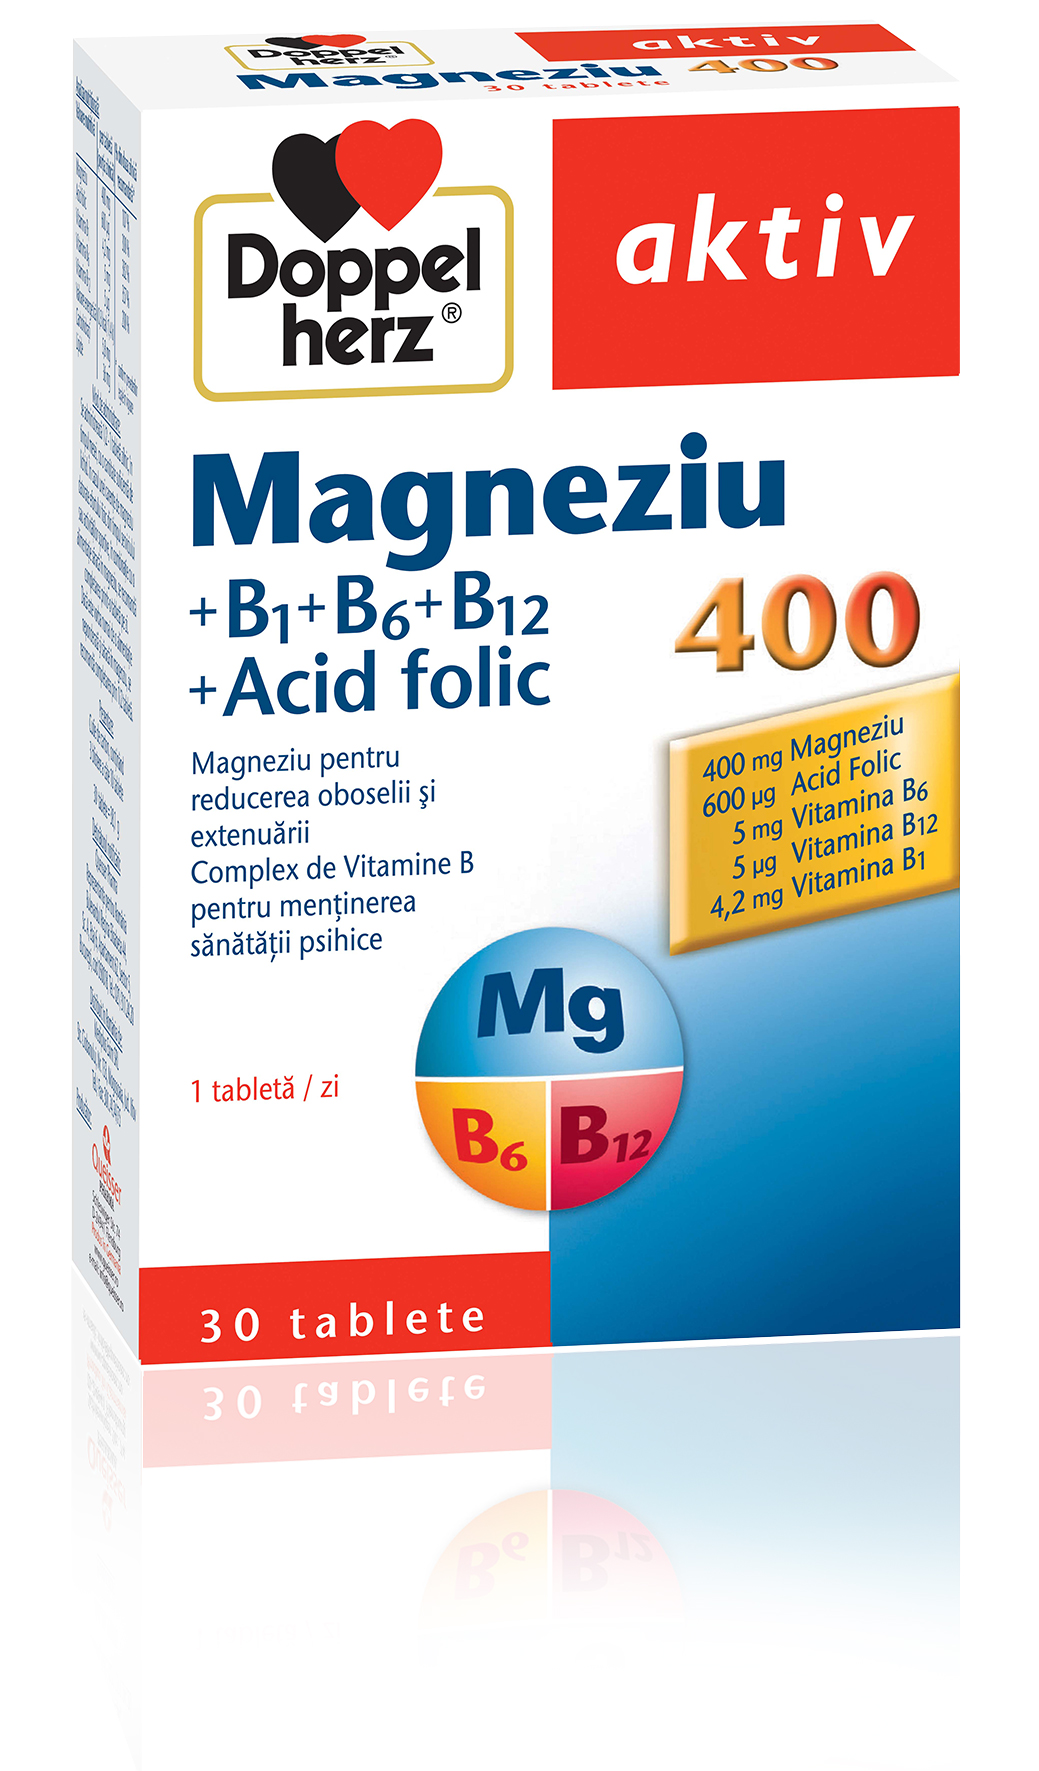 Vitamine si minerale - DOPPELHERZ MAGNEZIU 400MG +B1+B6+B12+ACID FOLIC, farmacom.ro